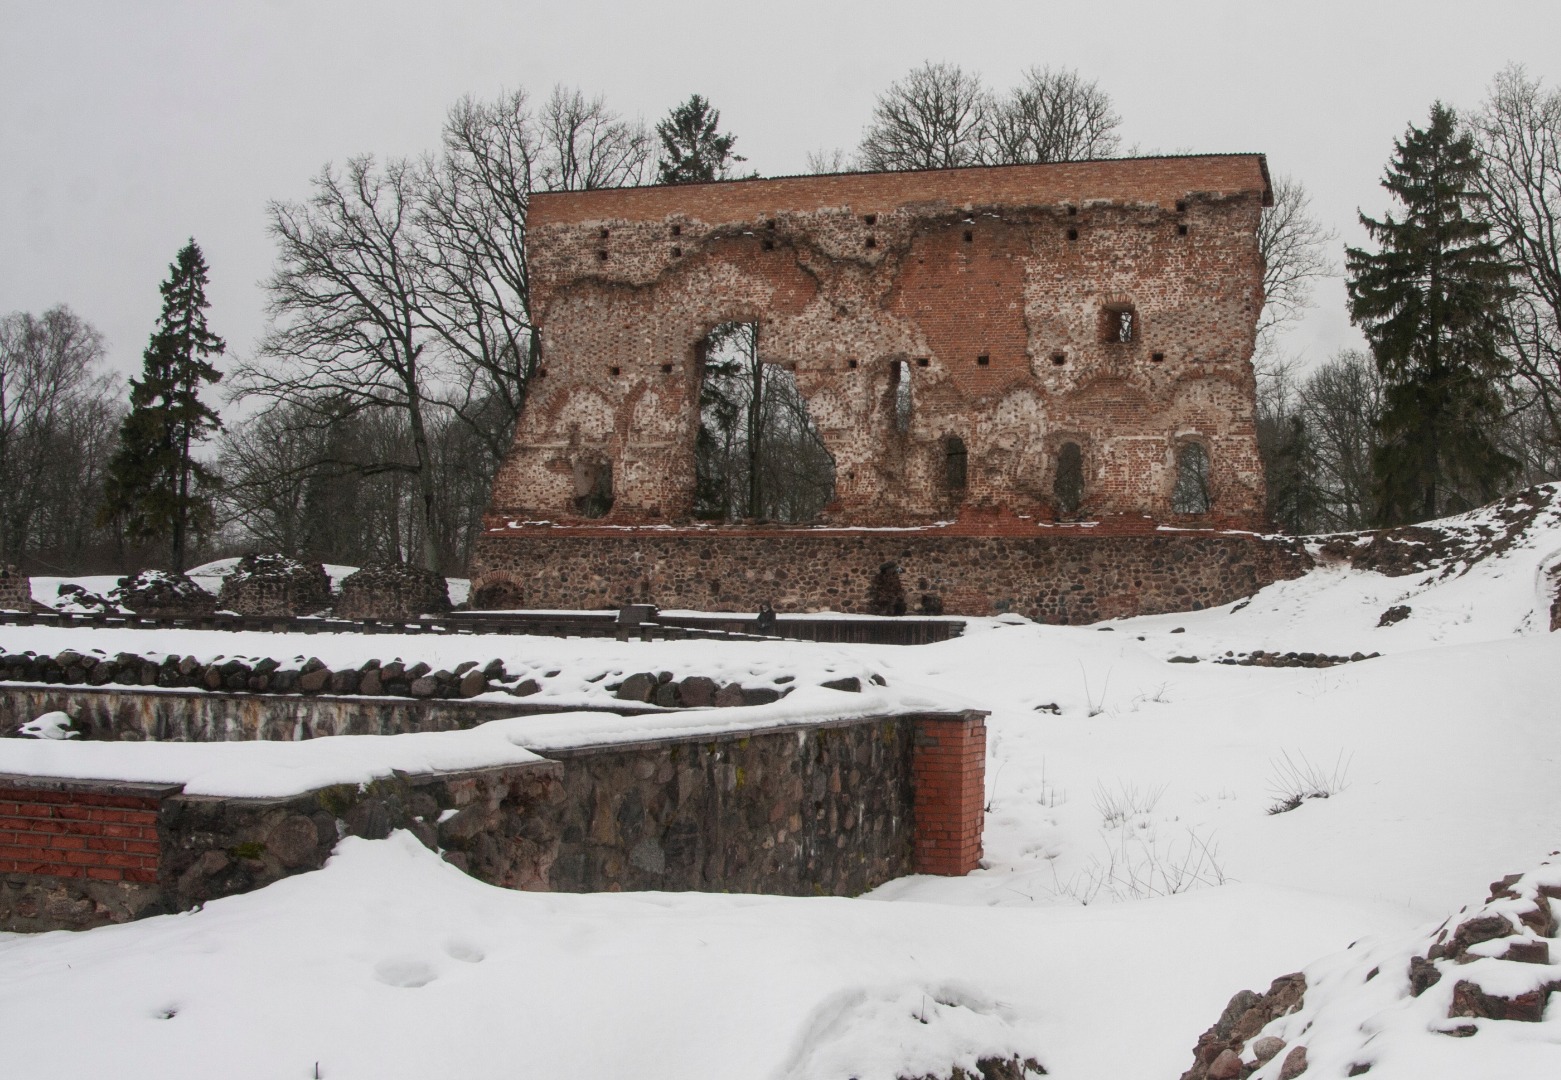 foto Viljandi ordulossi varemed, Kaevumägi 1942 talv foto T.Parri rephoto